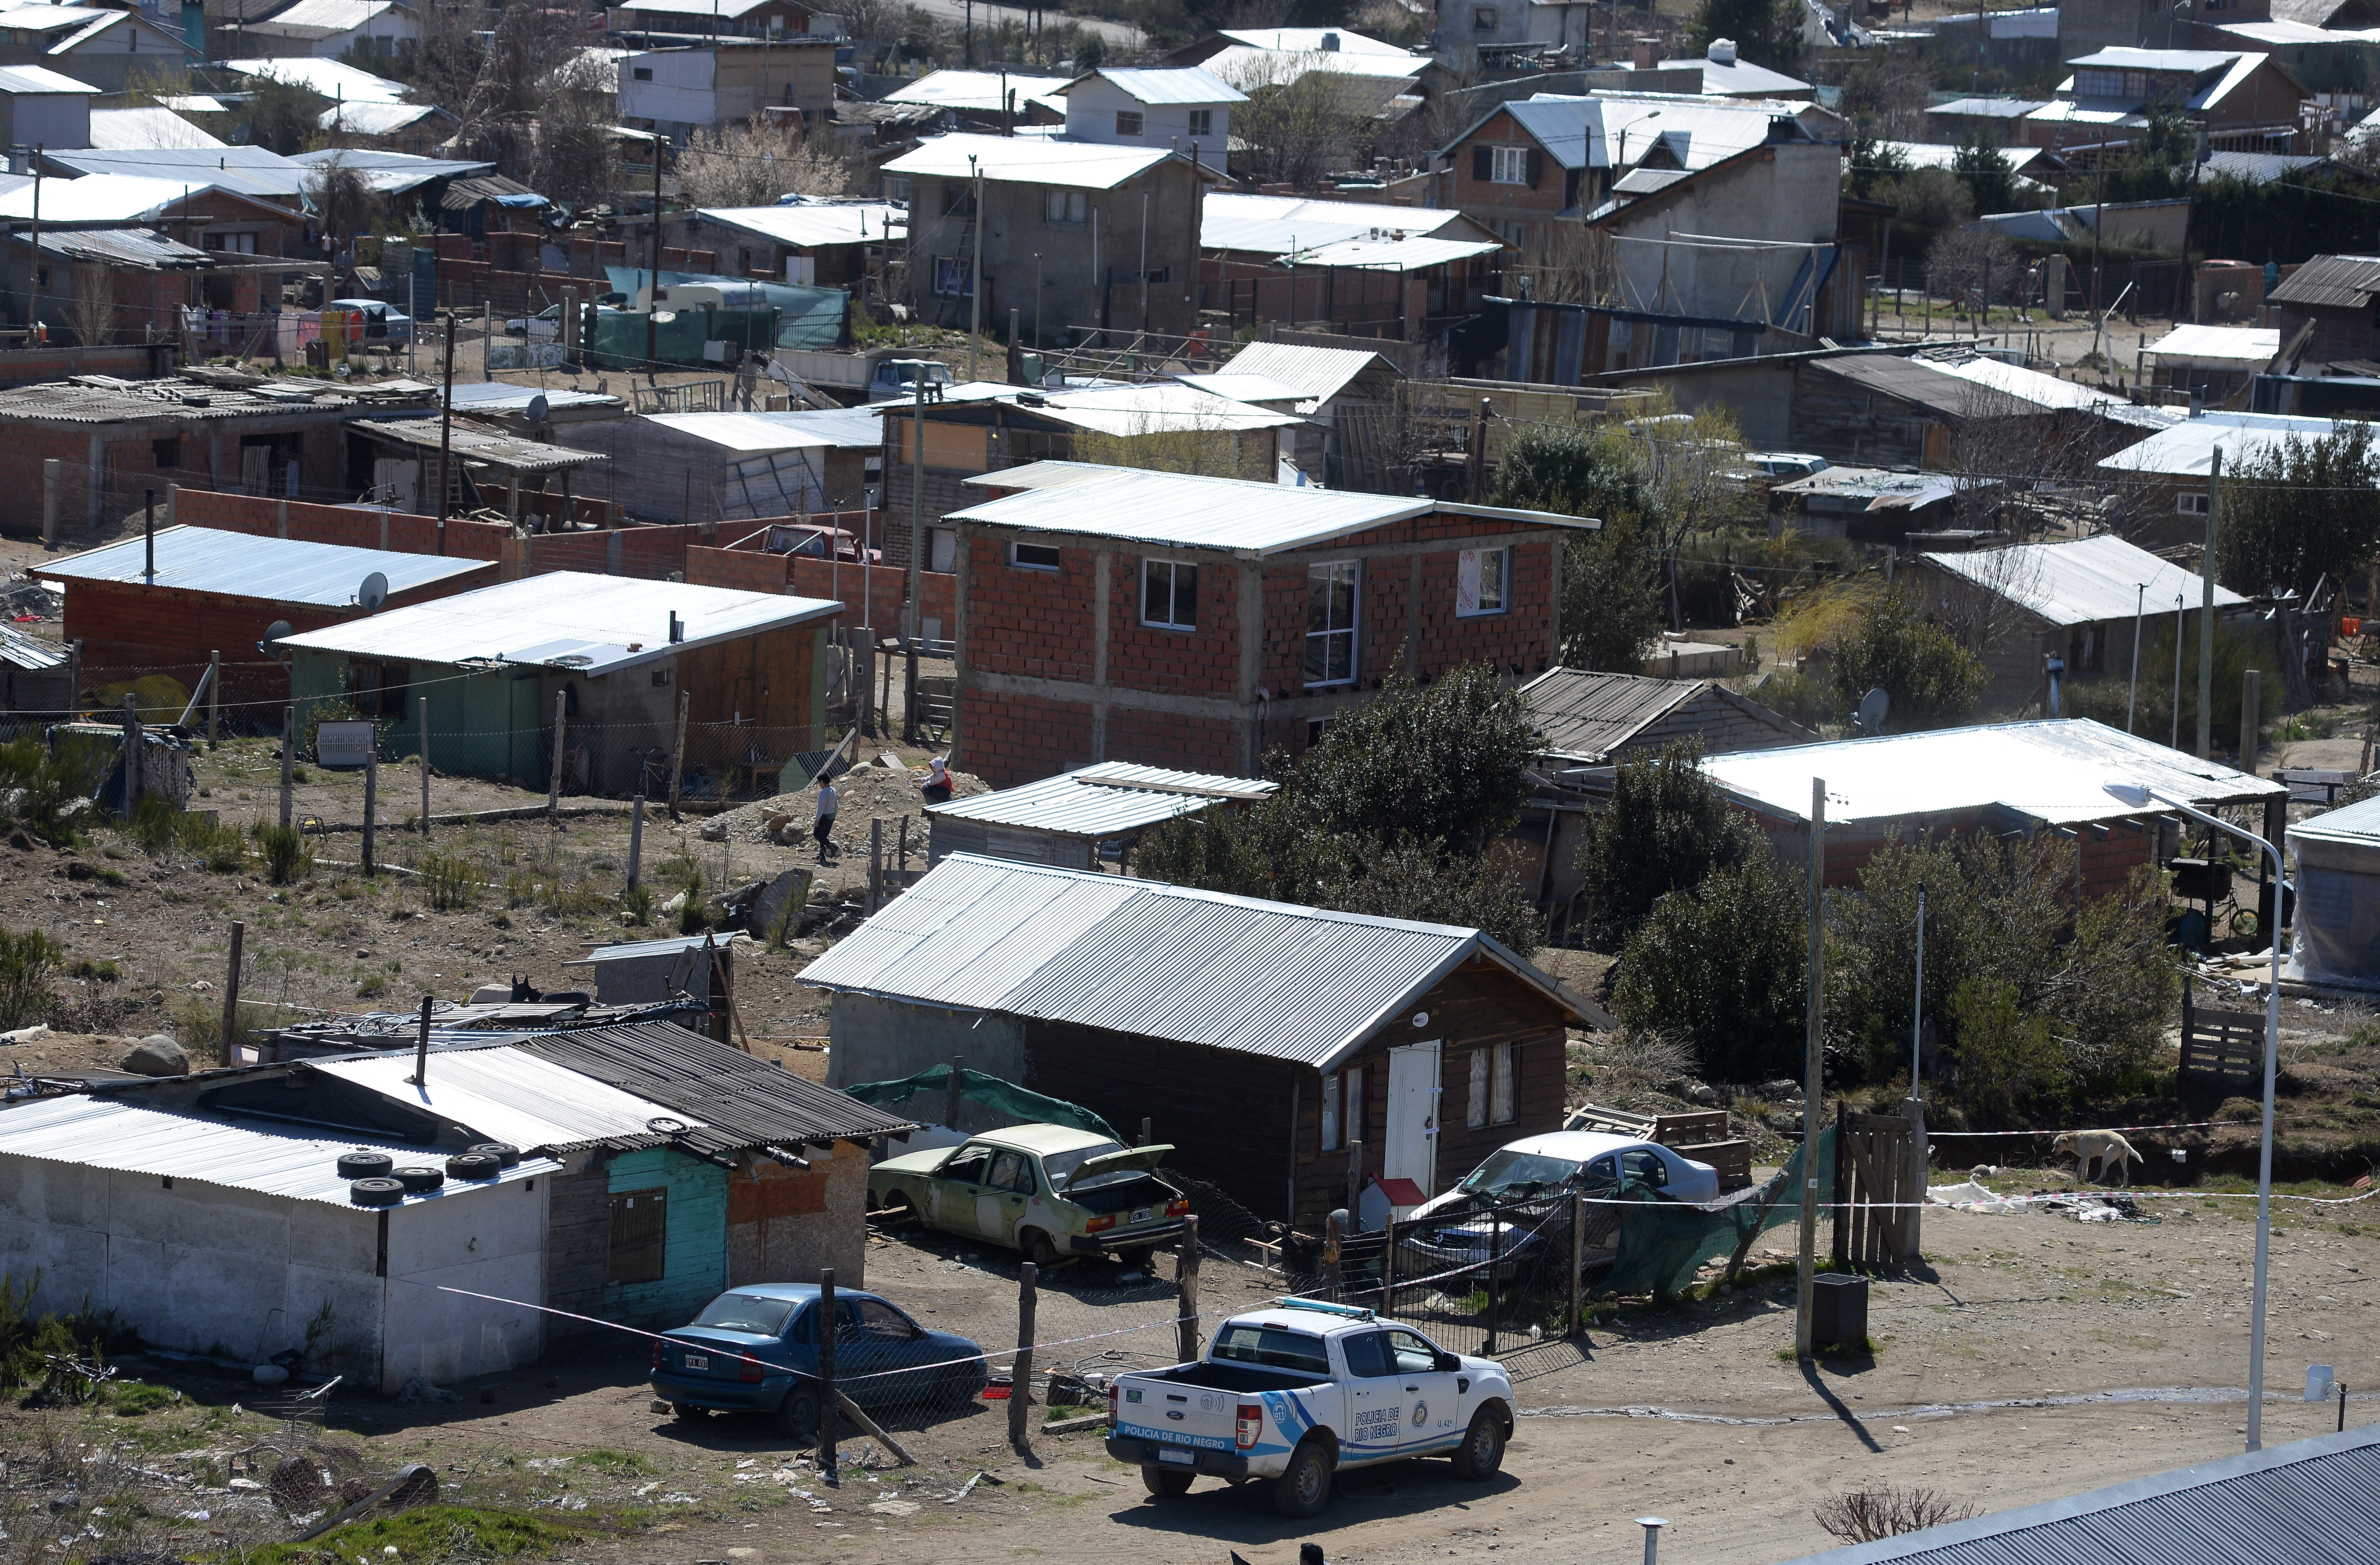 El homicidio ocurrió en el barrio 136 Viviendas en Bariloche. Foto: Alfredo Leiva